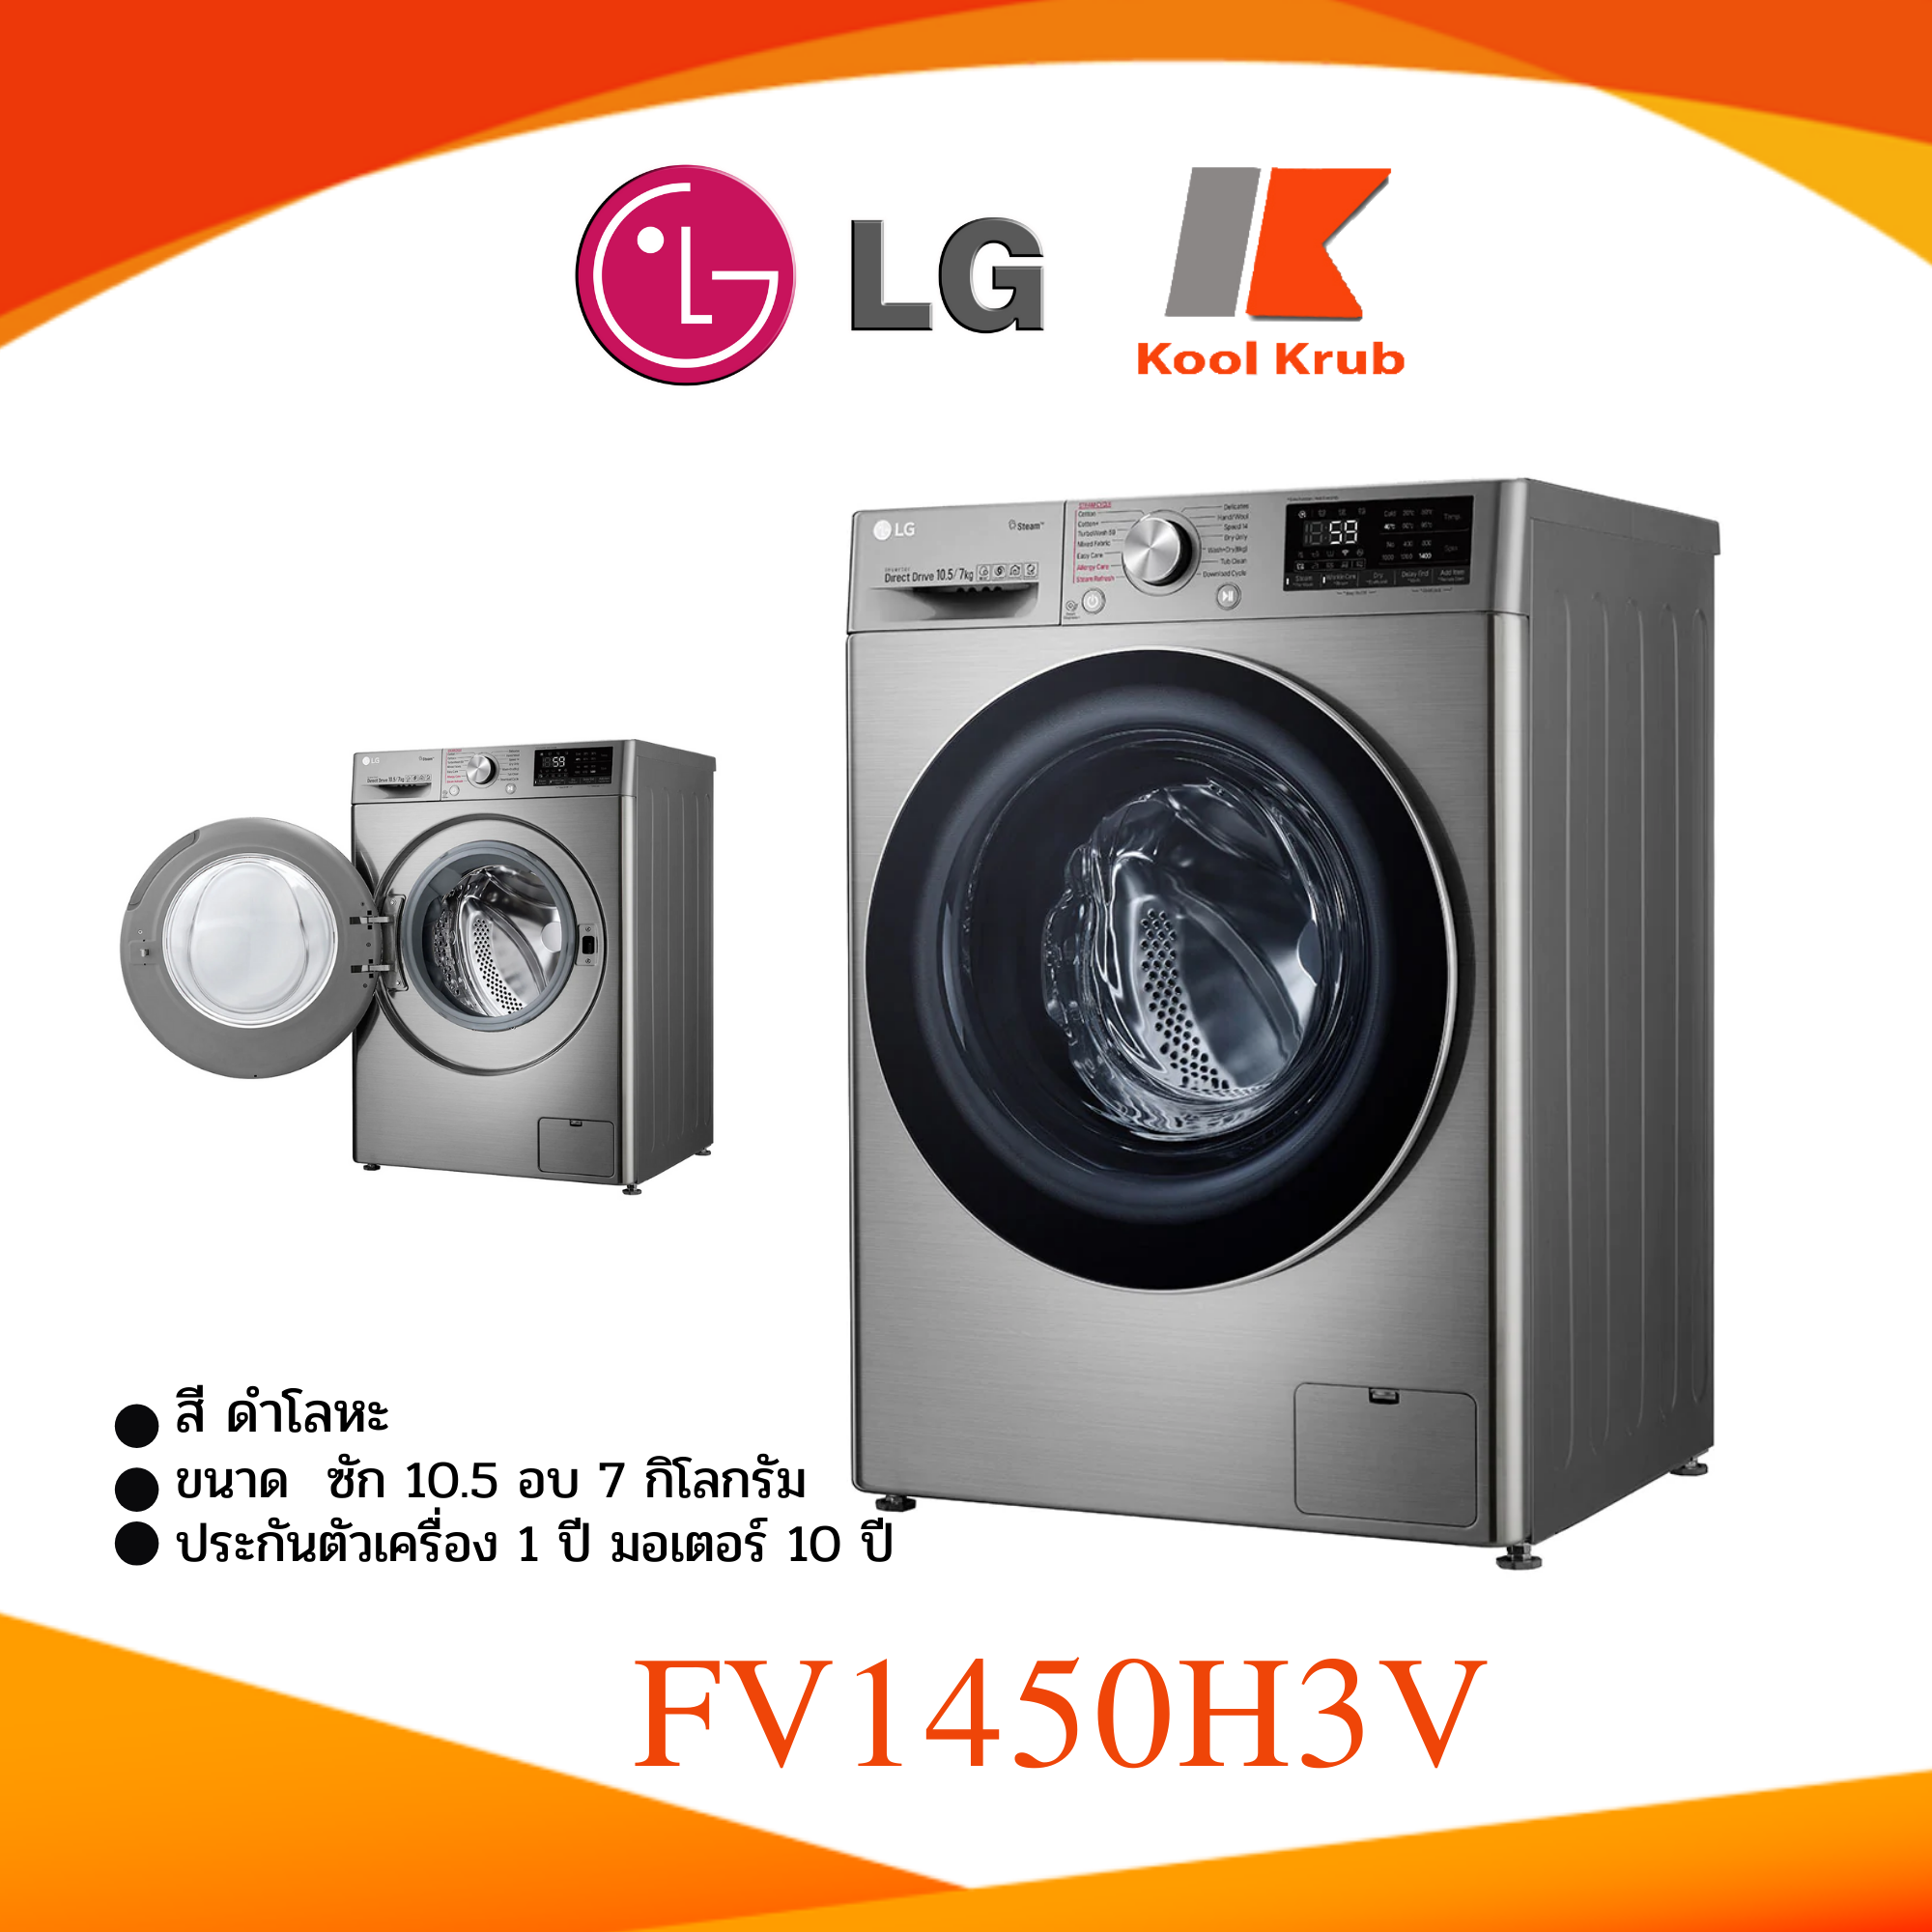 LG  เครื่องซักผ้า+อบผ้า รุ่น FV1450H3V ความจุ 10.5 / 7 กก. 1450H3V ?แถมฟรีขาตั้งและผ้าคลุม?